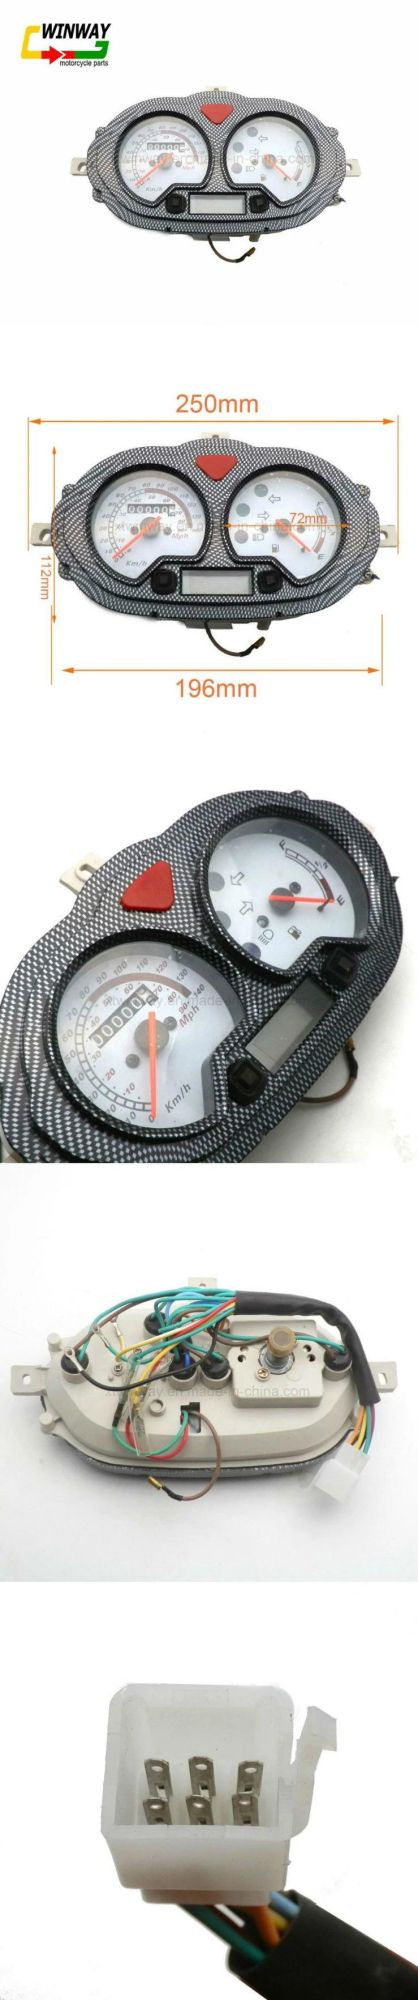 Digital LCD Motorcycle Parts Speedometer Odometer Gauge